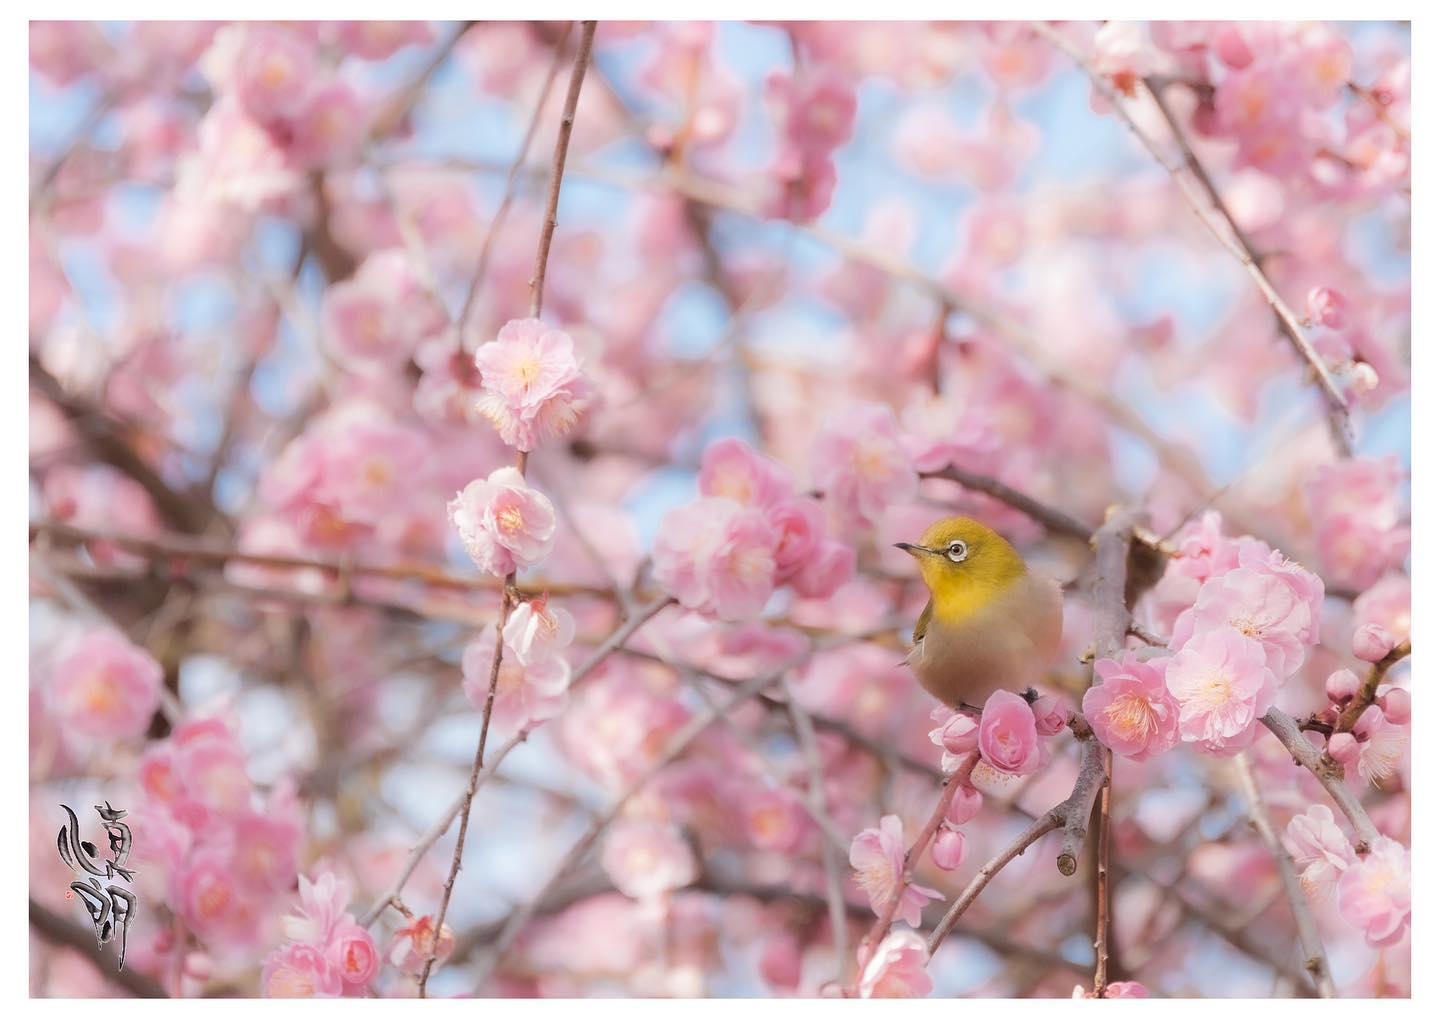 Instagram更新しました。 eg. 。おはようございます。 和歌山のカメラマン、小さな写真屋･はれのひ工房の末藤（スエトウ）です。２月にお持ちさせて頂く月々のプリントは和泉リサイクル環境公園で撮った写真です。天気の良い日に満開の八重咲きの梅の中のメジロを撮りました。｢寒さの厳しい時期ですが春までもう少し、ちょっとでも春らしさを感じて貰えるように｣との想いからこの写真にしました。プリントは春らしく柔らかめで仕上げました。そして小さなプリントを３枚。美浜町の漬物干しと伊奈漁港のワカメ干しを添えました。寒いからこそ美味しくなる和歌山の風物詩です。写真屋・はれのひ工房はご希望の方にお店や病院やご家庭に飾る月々の写真を配達させて頂いています。また遠方の方には郵送させて頂いていますのでお気軽にお問い合わせ下さい。 – from Instagram